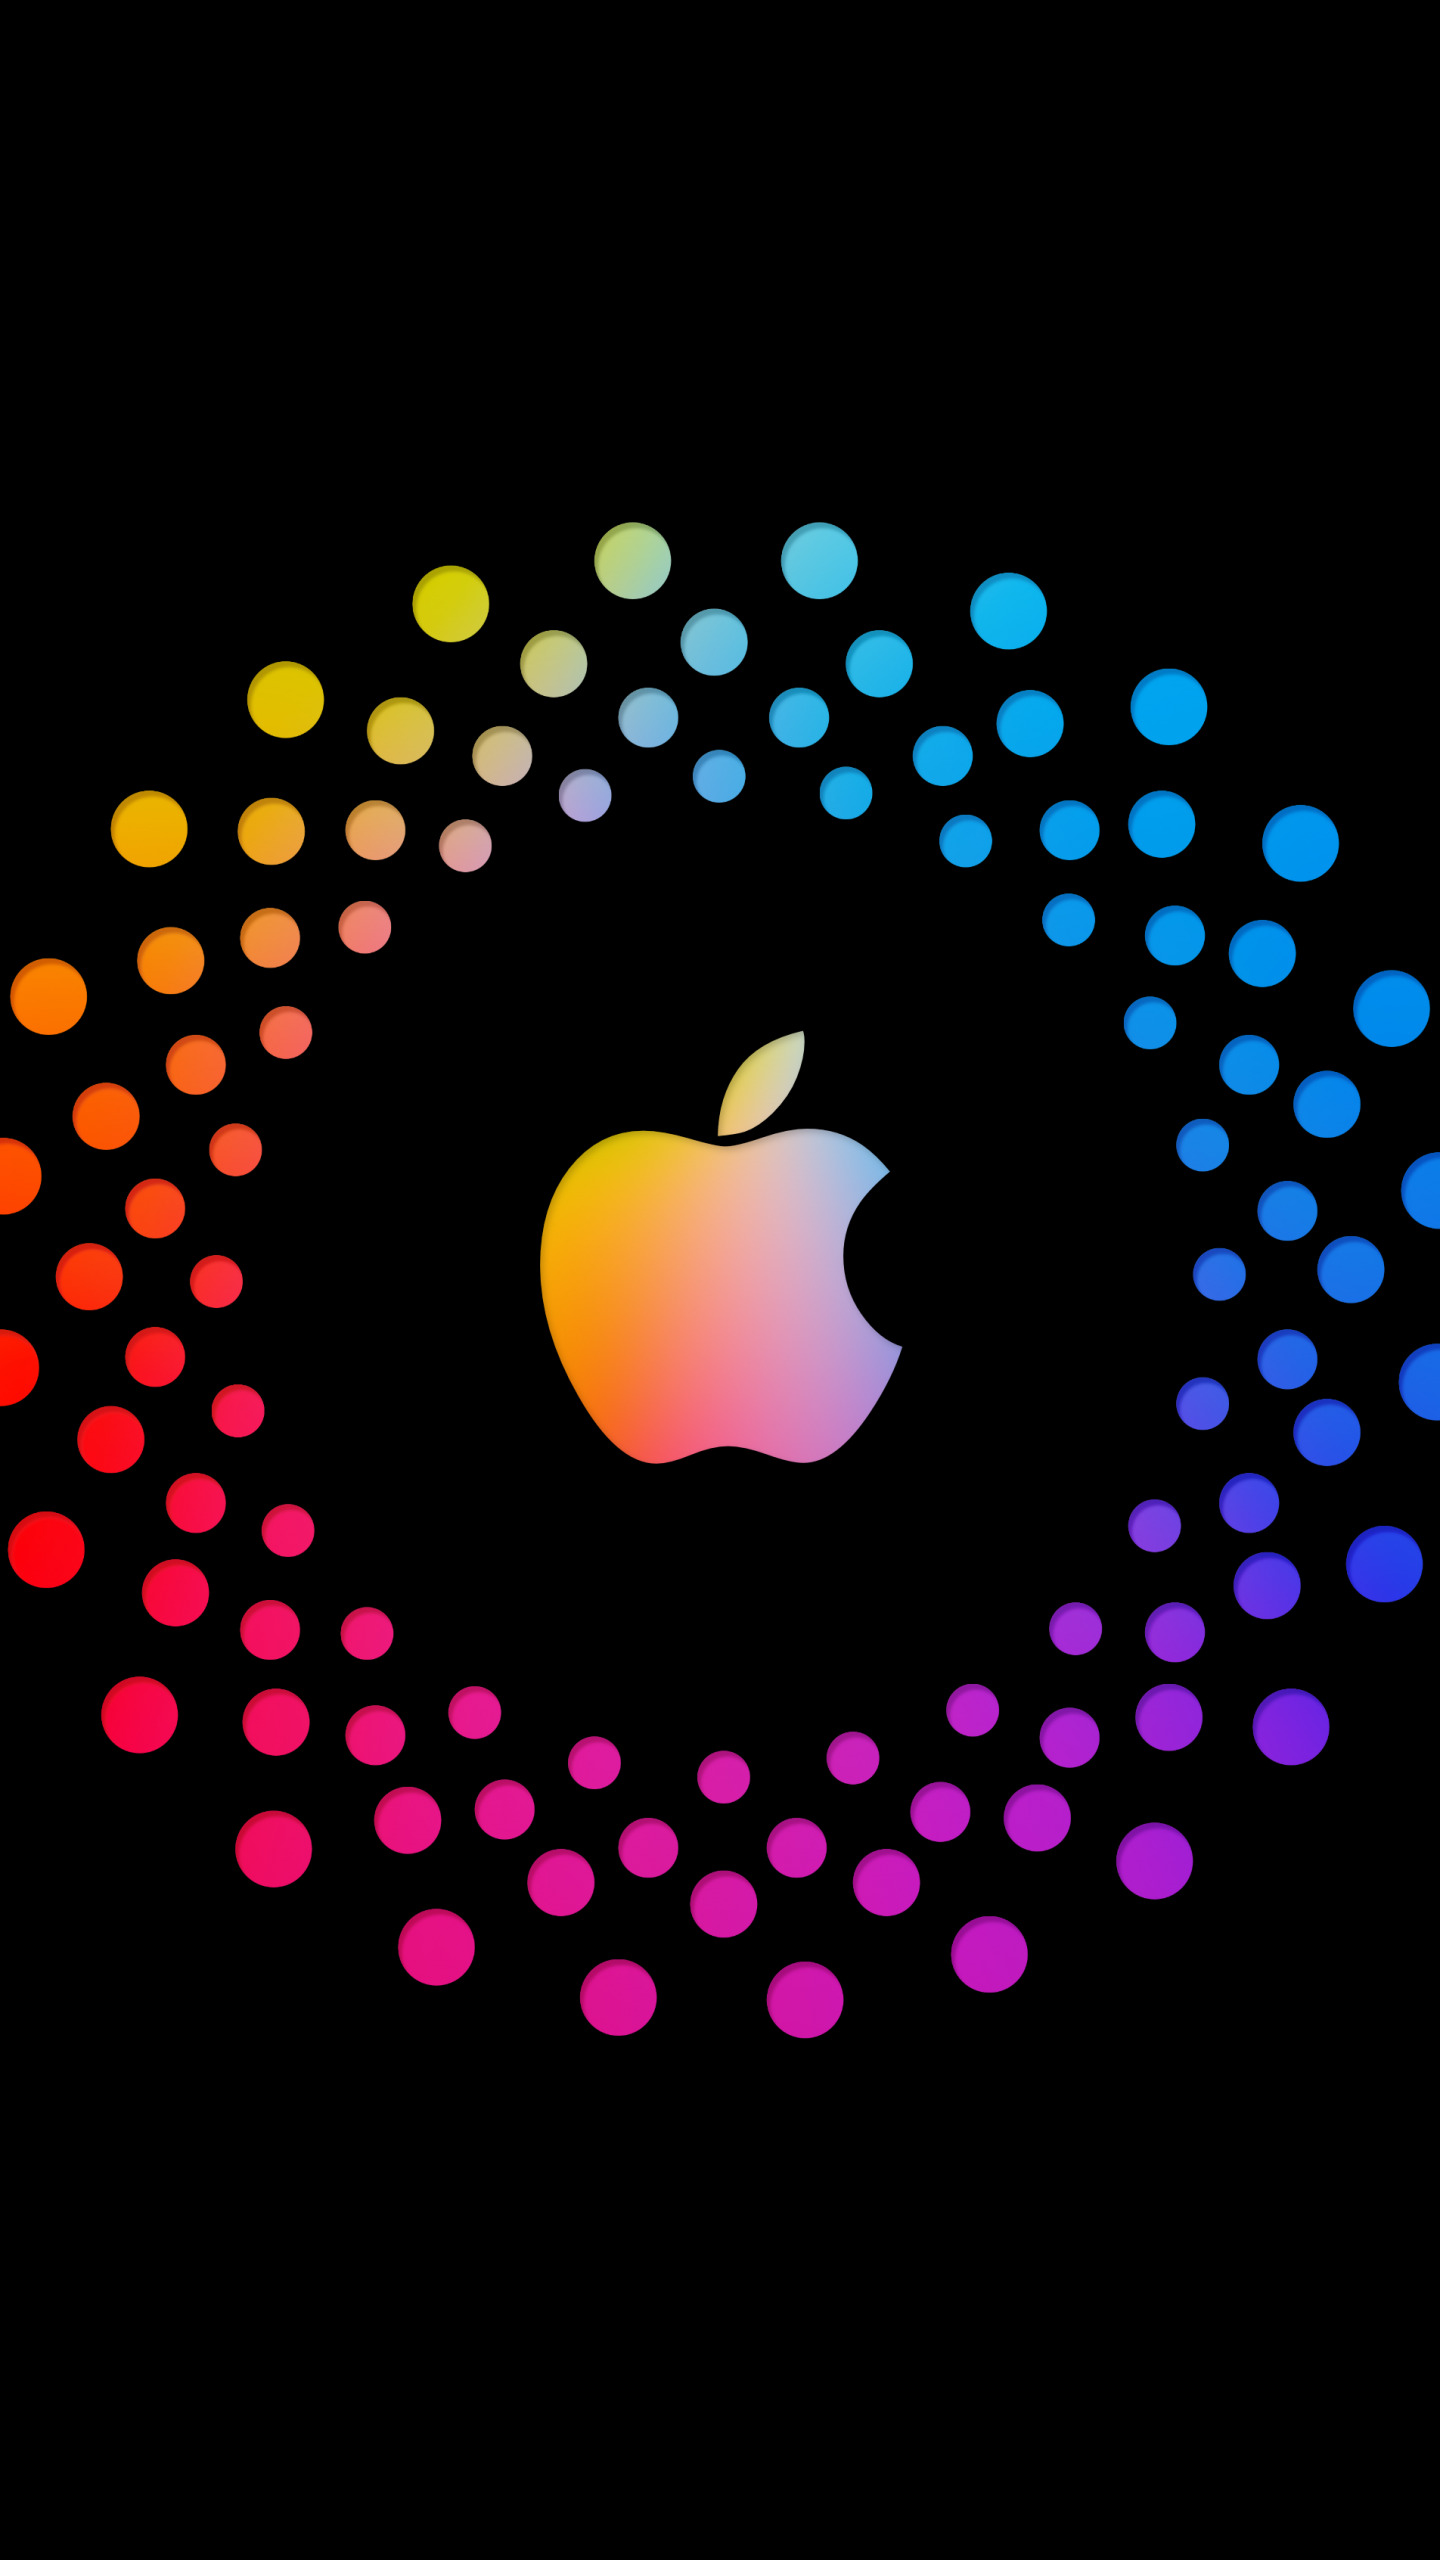 Lý do khiến logo Apple bị cắn mất góc